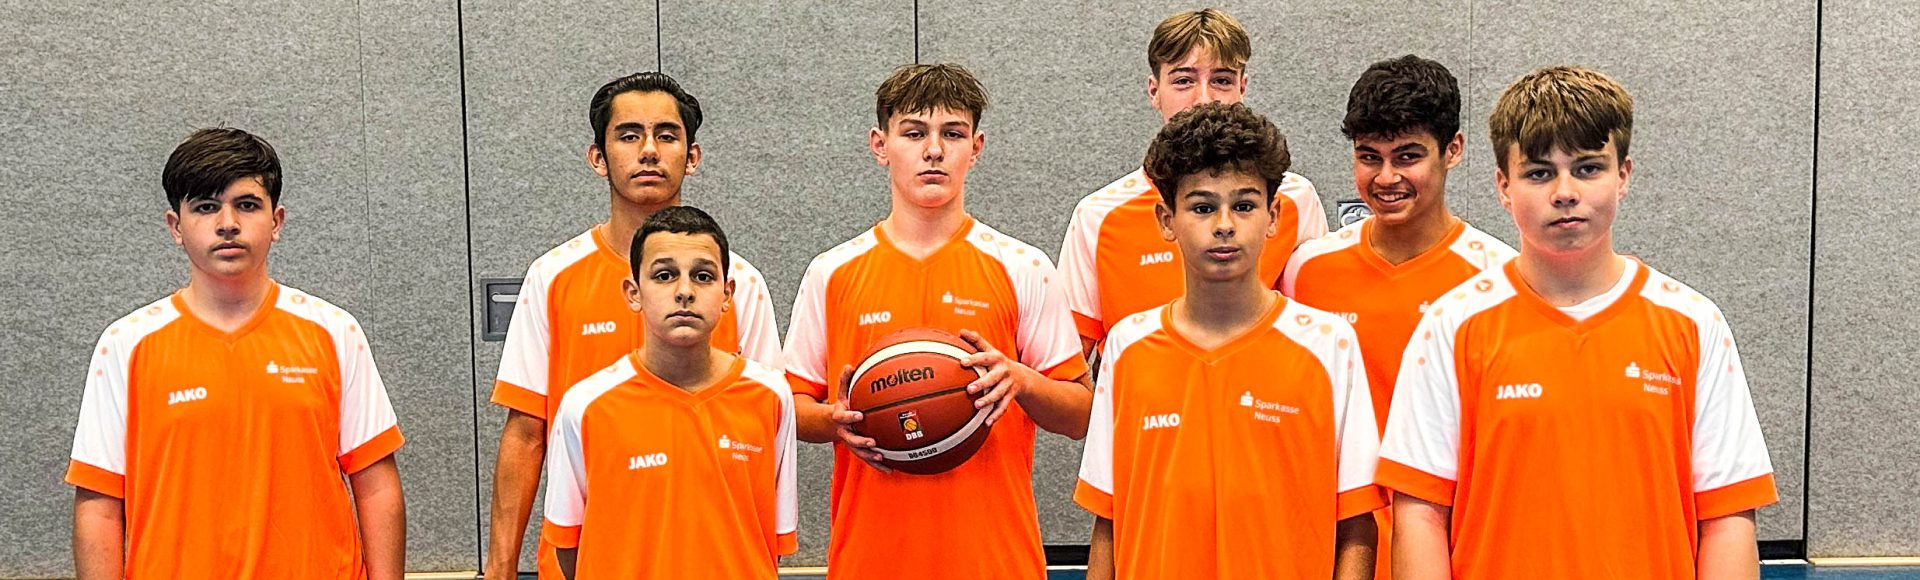 Großer Erfolg für die Basketballer der Gesamtschule Jüchen bei den Kreismeisterschaften im Basketball in Meerbusch!